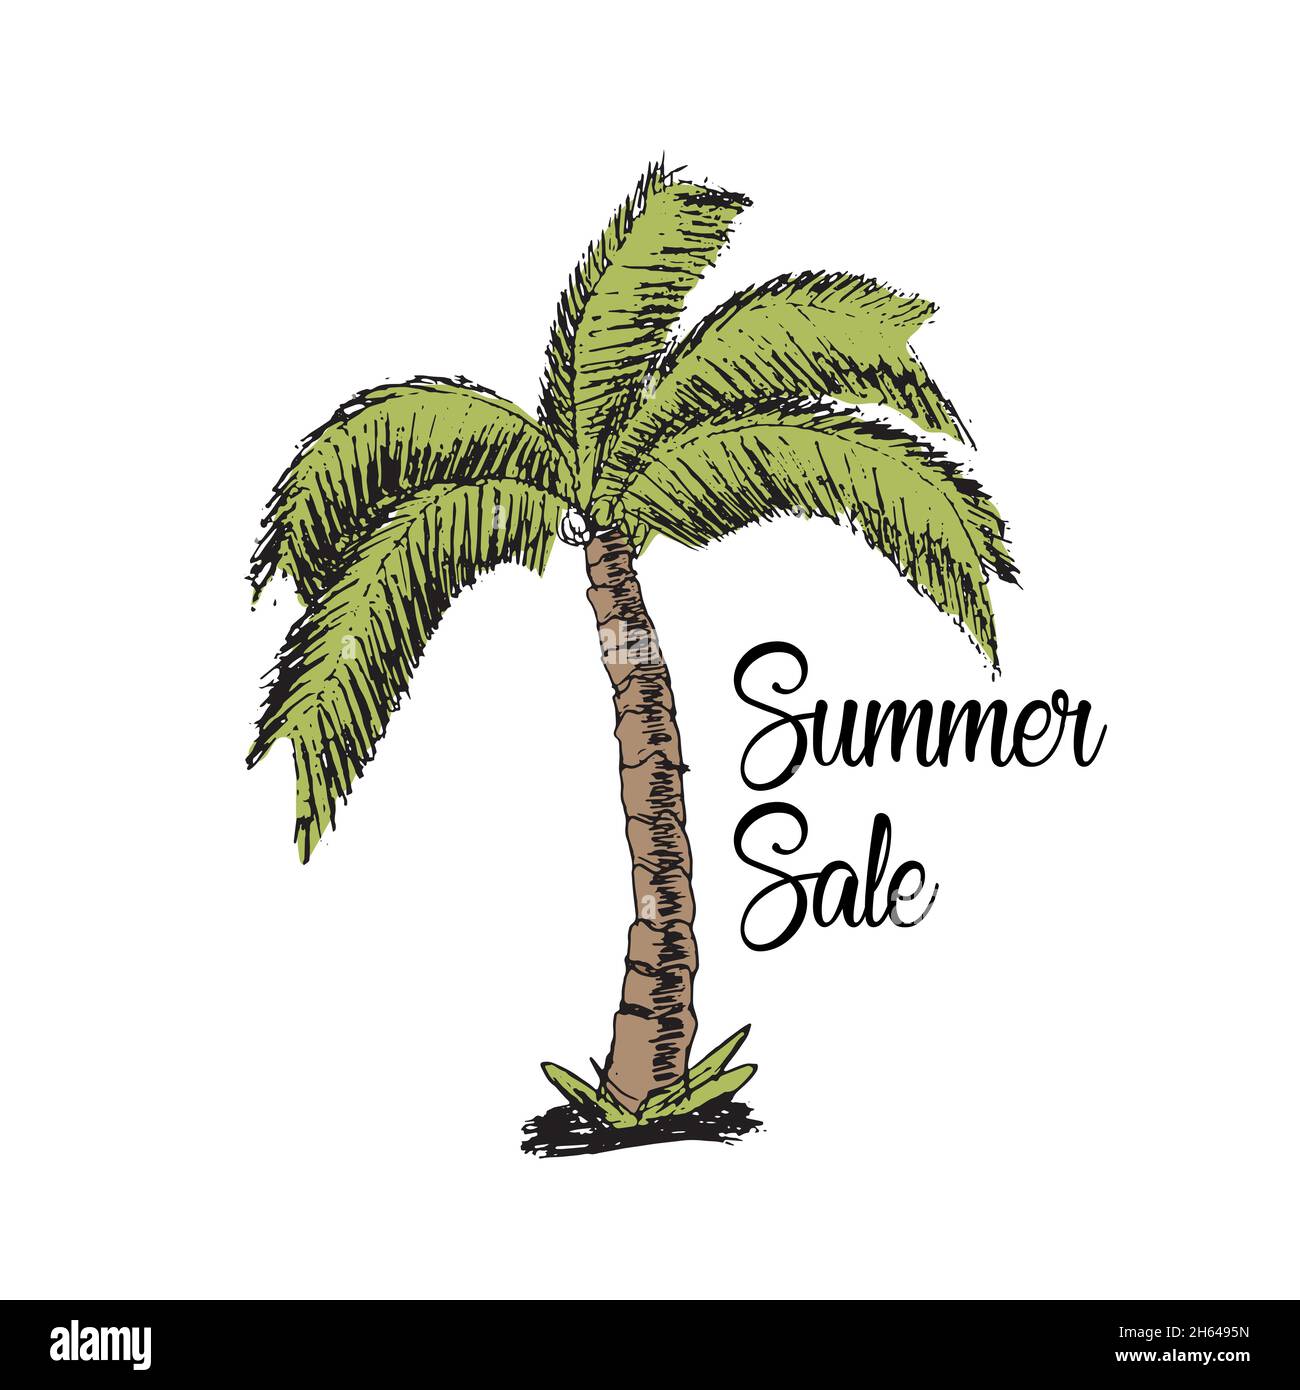 Handzeichnung der Palme im Sommer Verkauf Stock Vektor